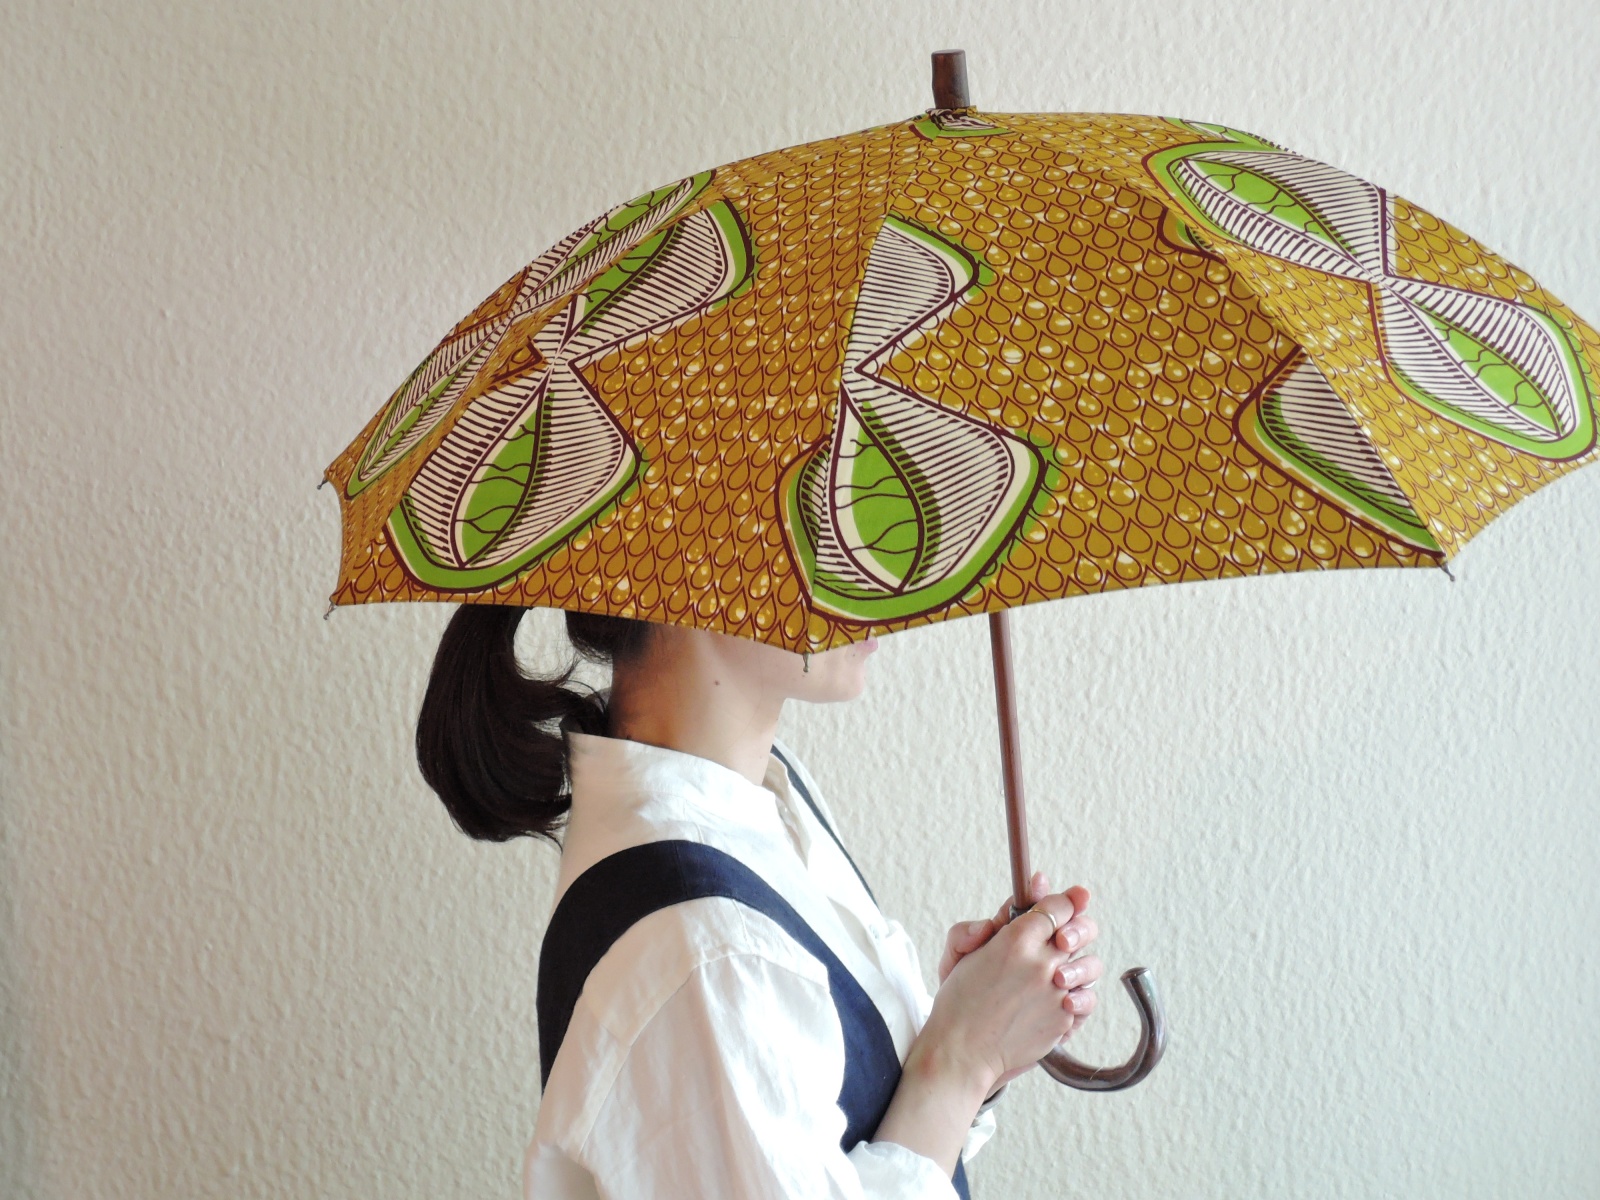 Bon Bon Storeの日傘で彩る夏 – Lifewares & Co. | ライフウェアーズ